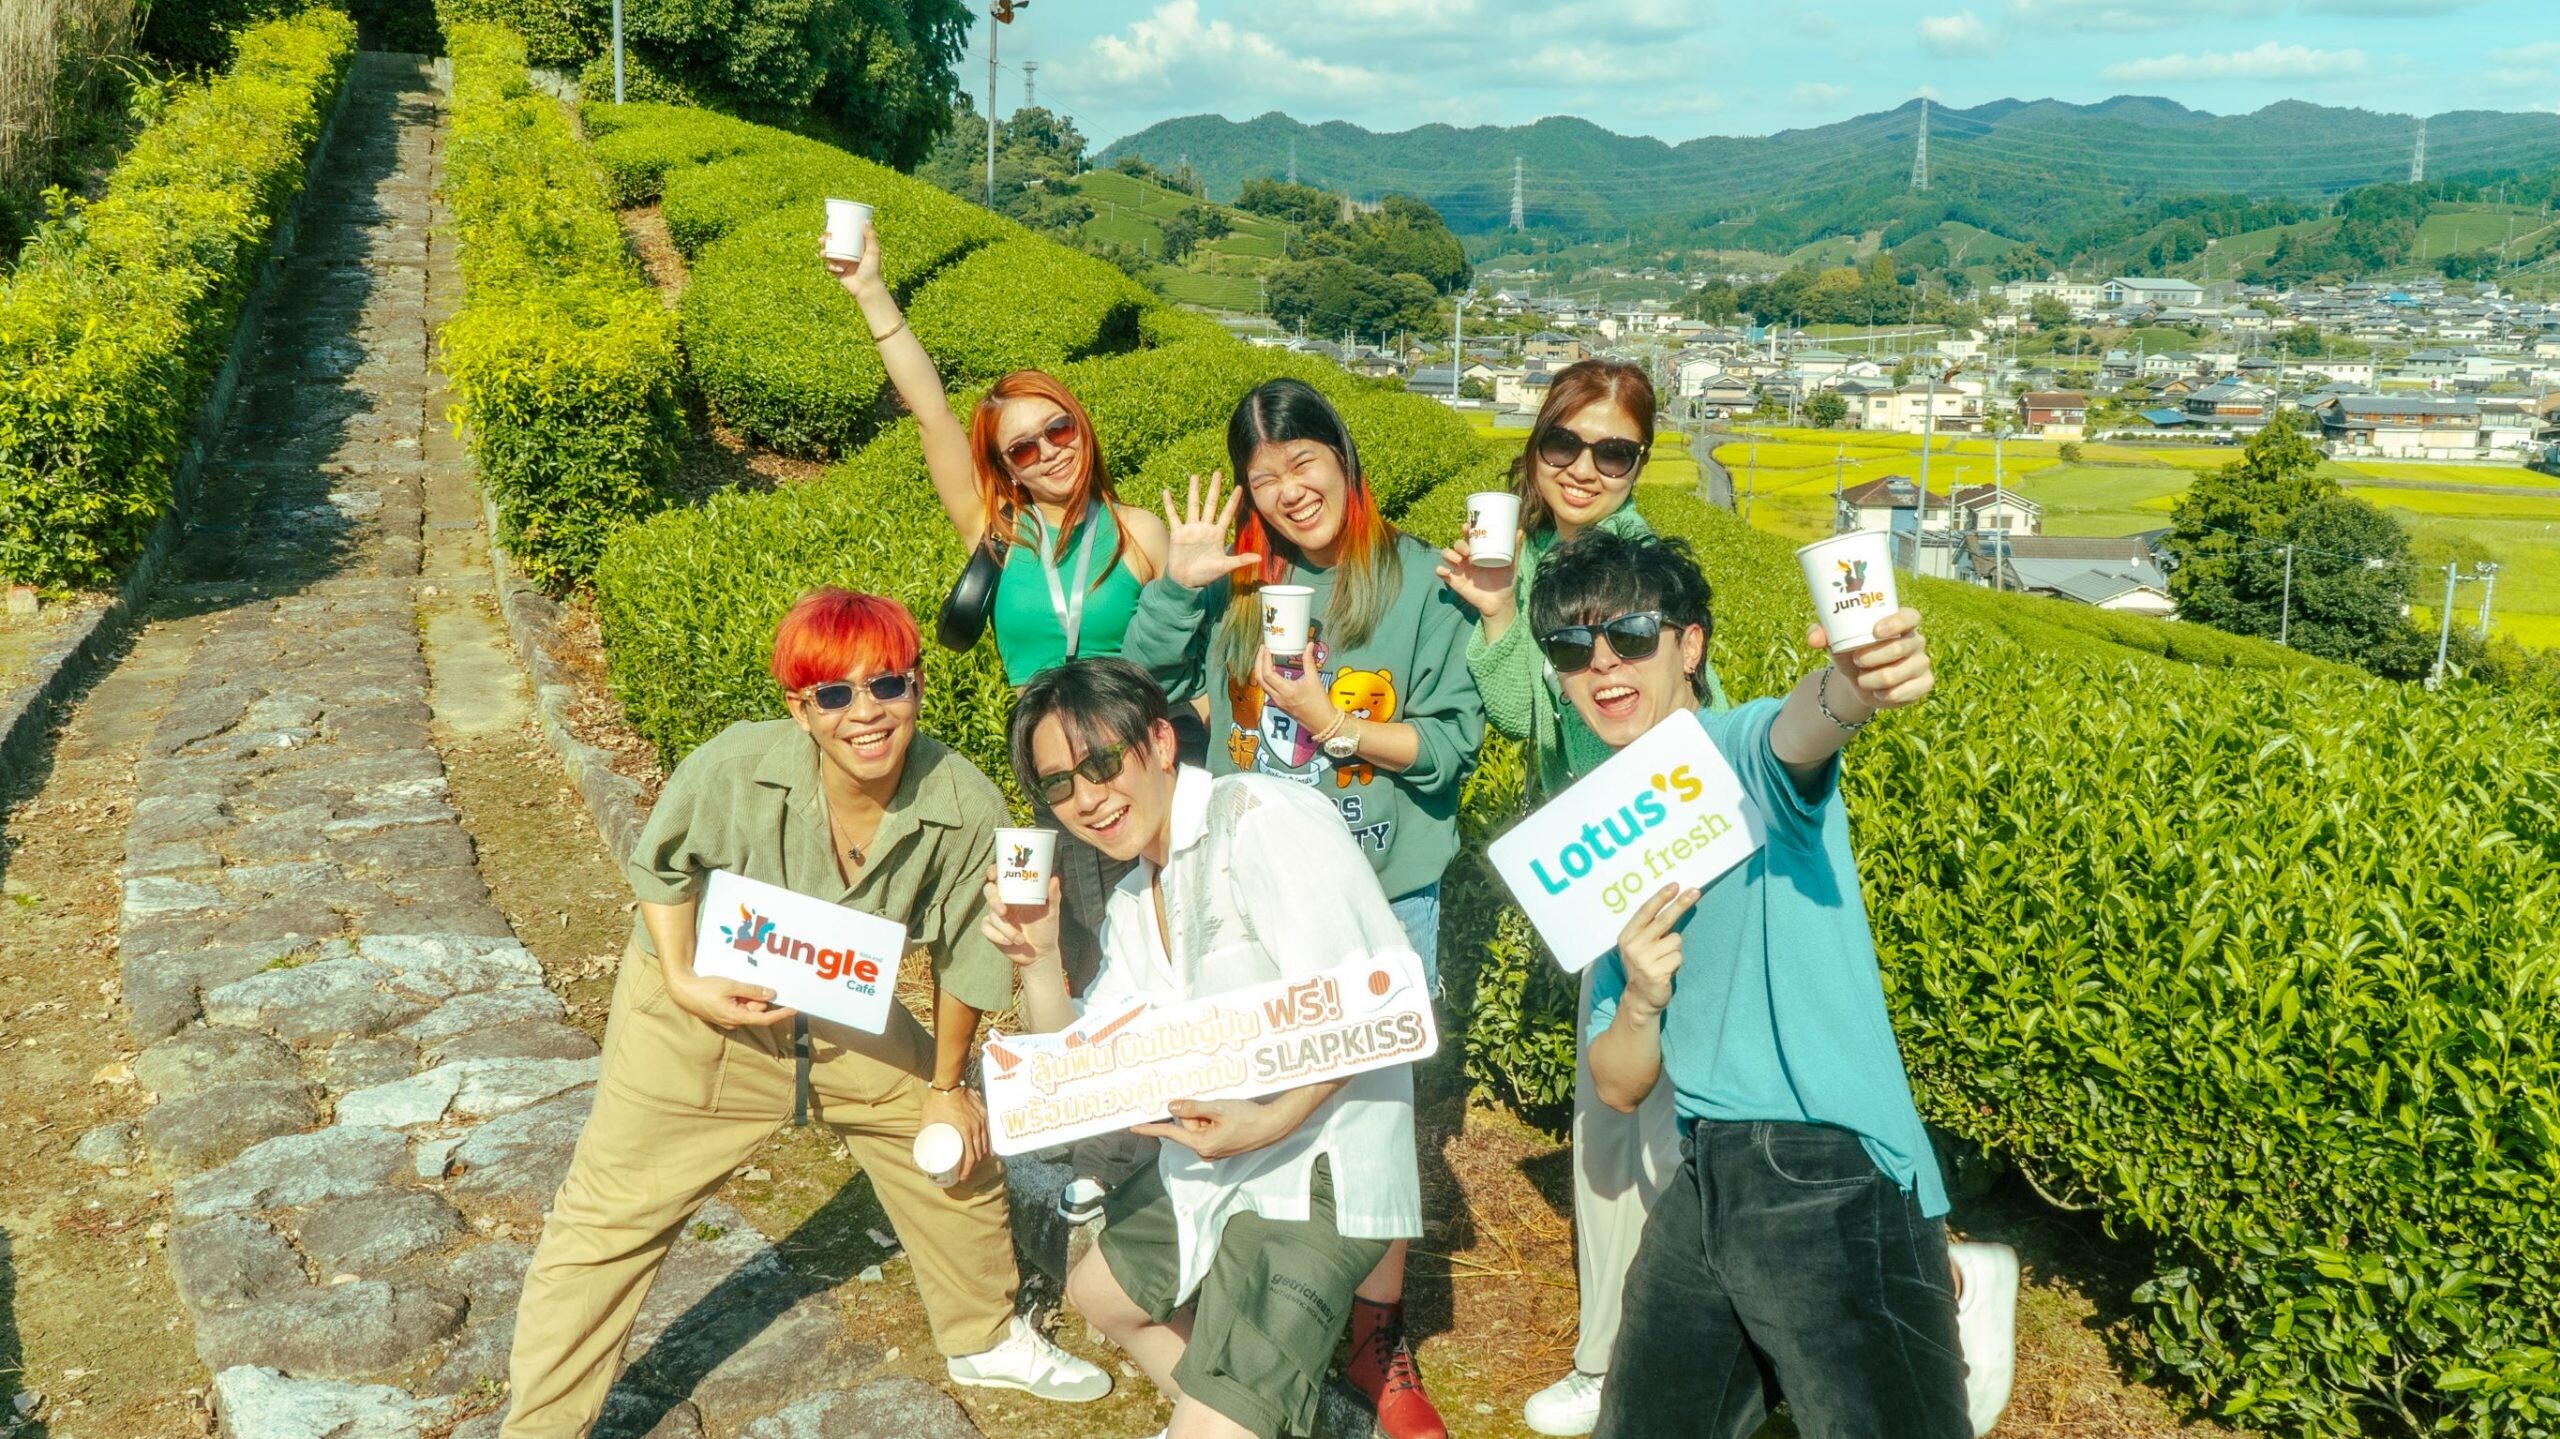 โลตัส ควงคู่วง SLAPKISS พาลูกค้า Jungle Cafe บิดลัดฟ้าไปญี่ปุ่น บุกแหล่งปลูกชาเขียวอูจิมัทชะสุดพรีเมียม ต้นกำเนิดชาเขียวอูจิที่ดีที่สุดในโลก